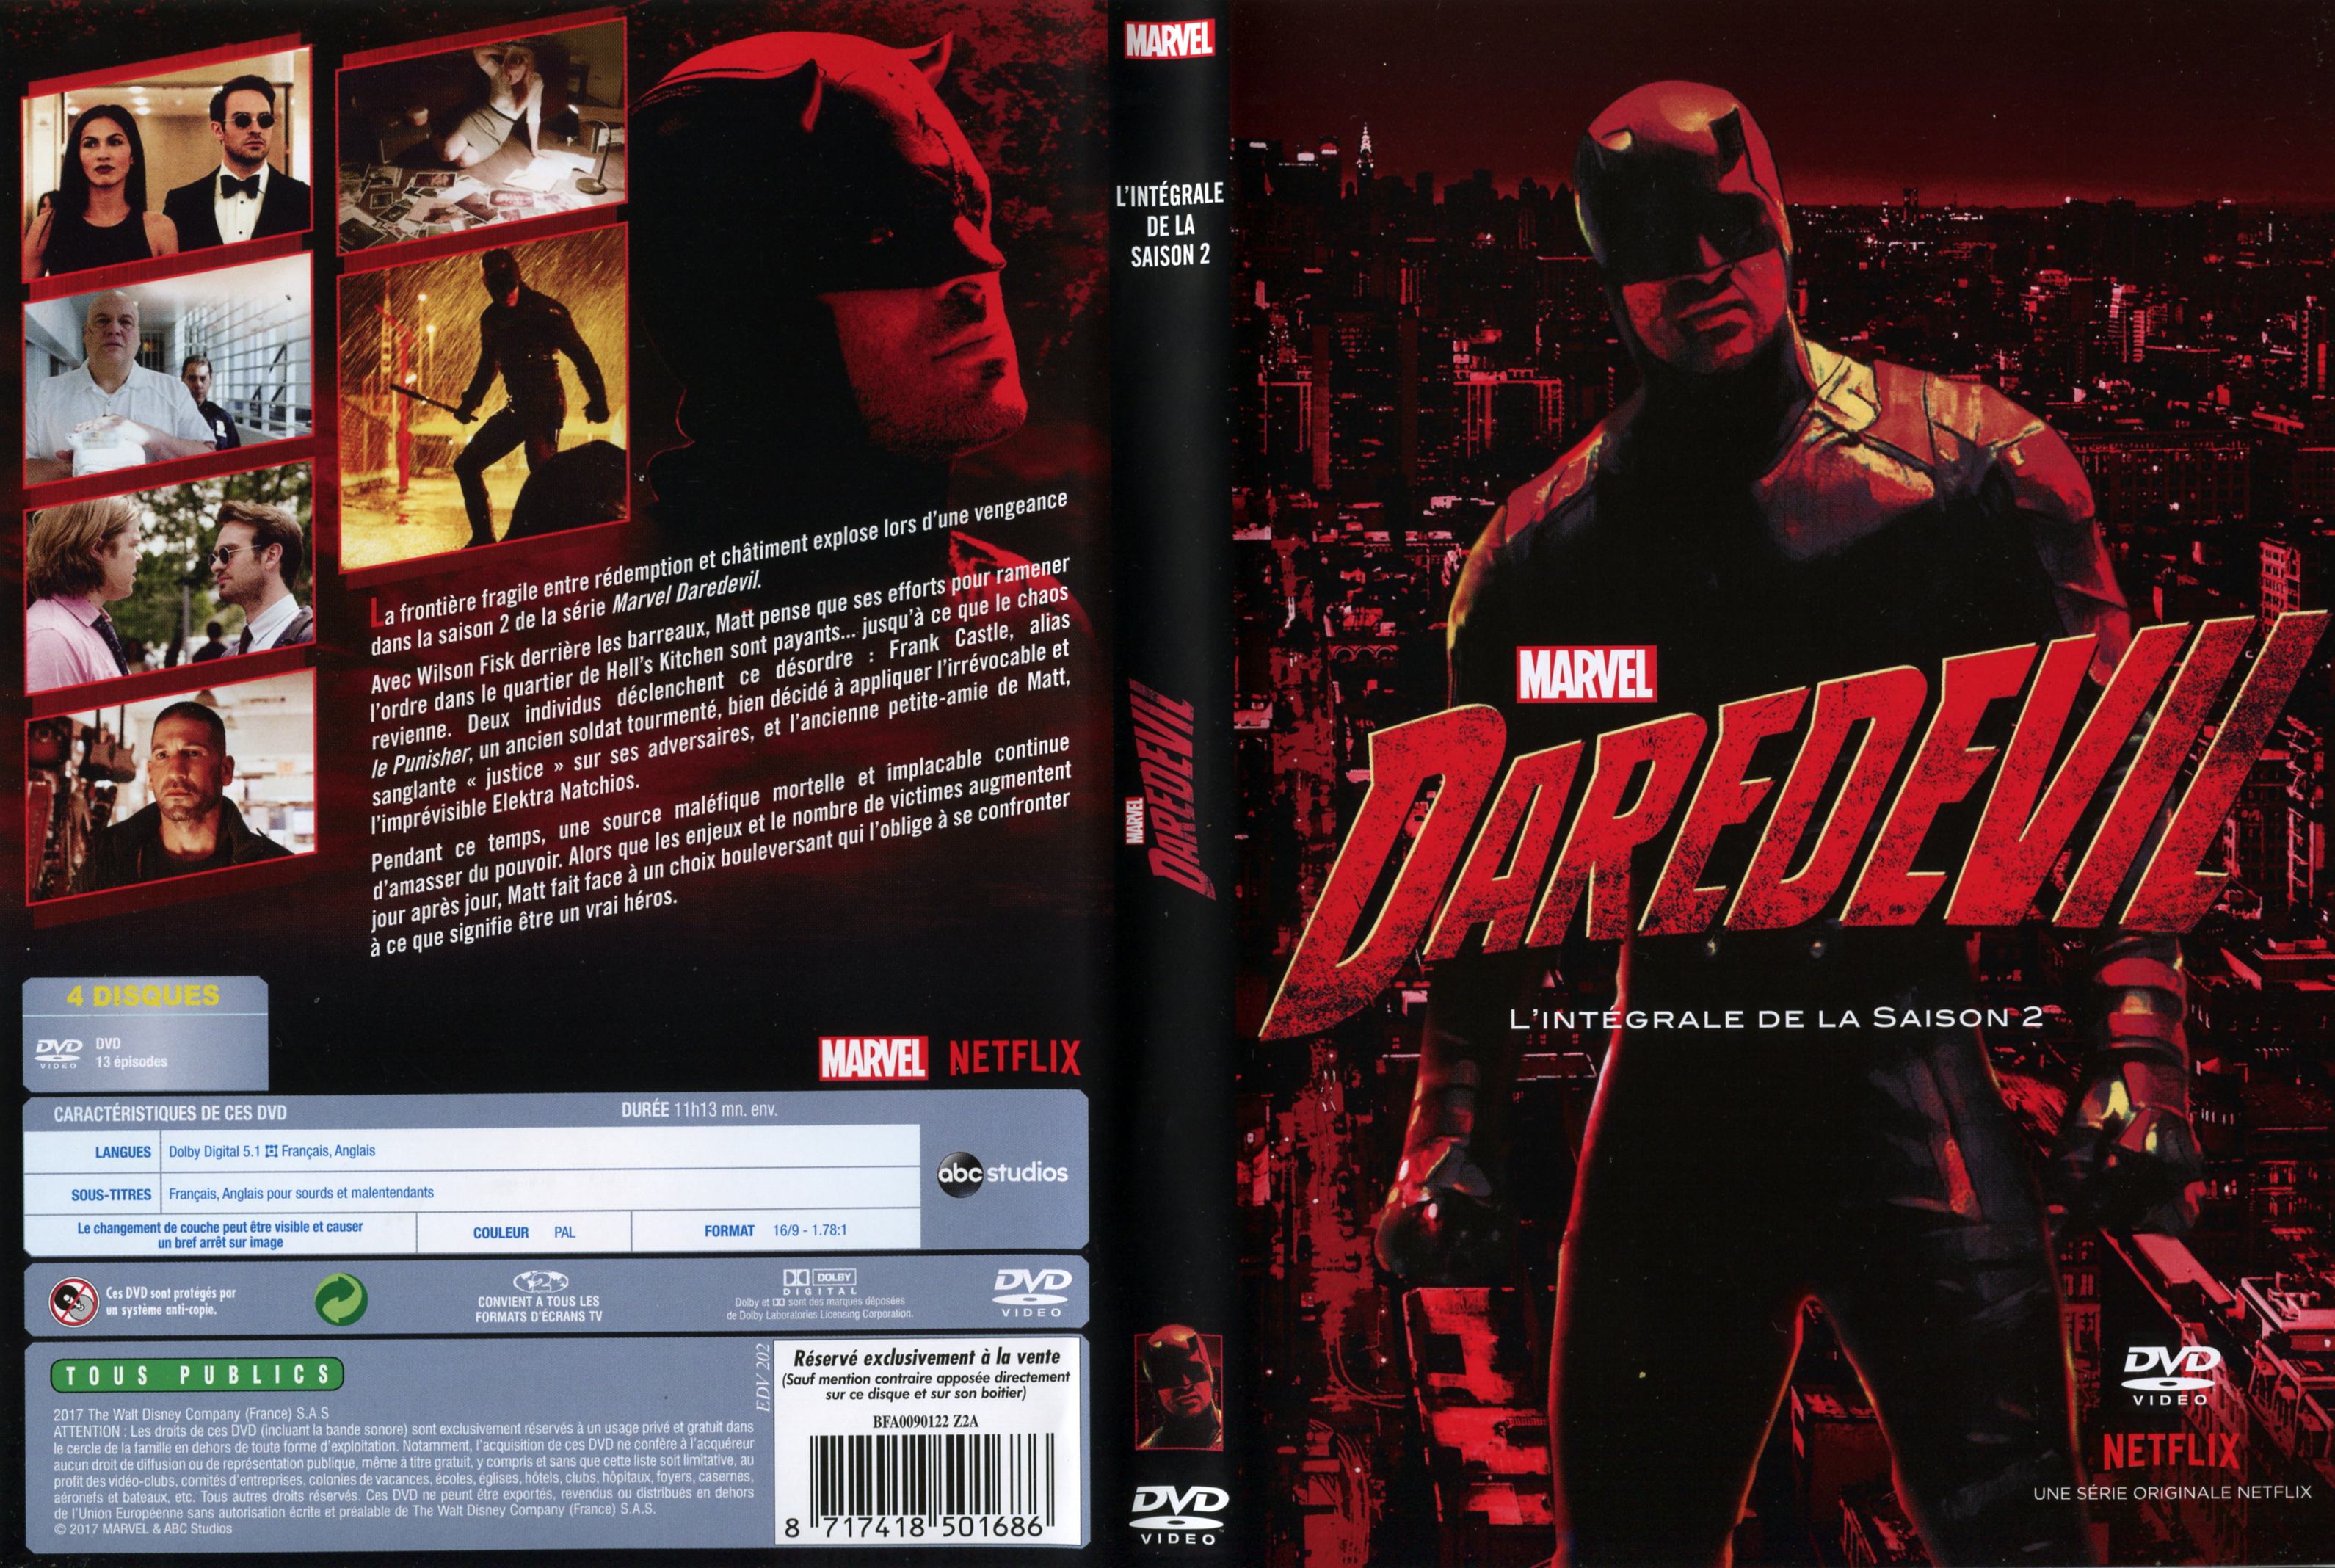 Jaquette DVD Daredevil Saison 2